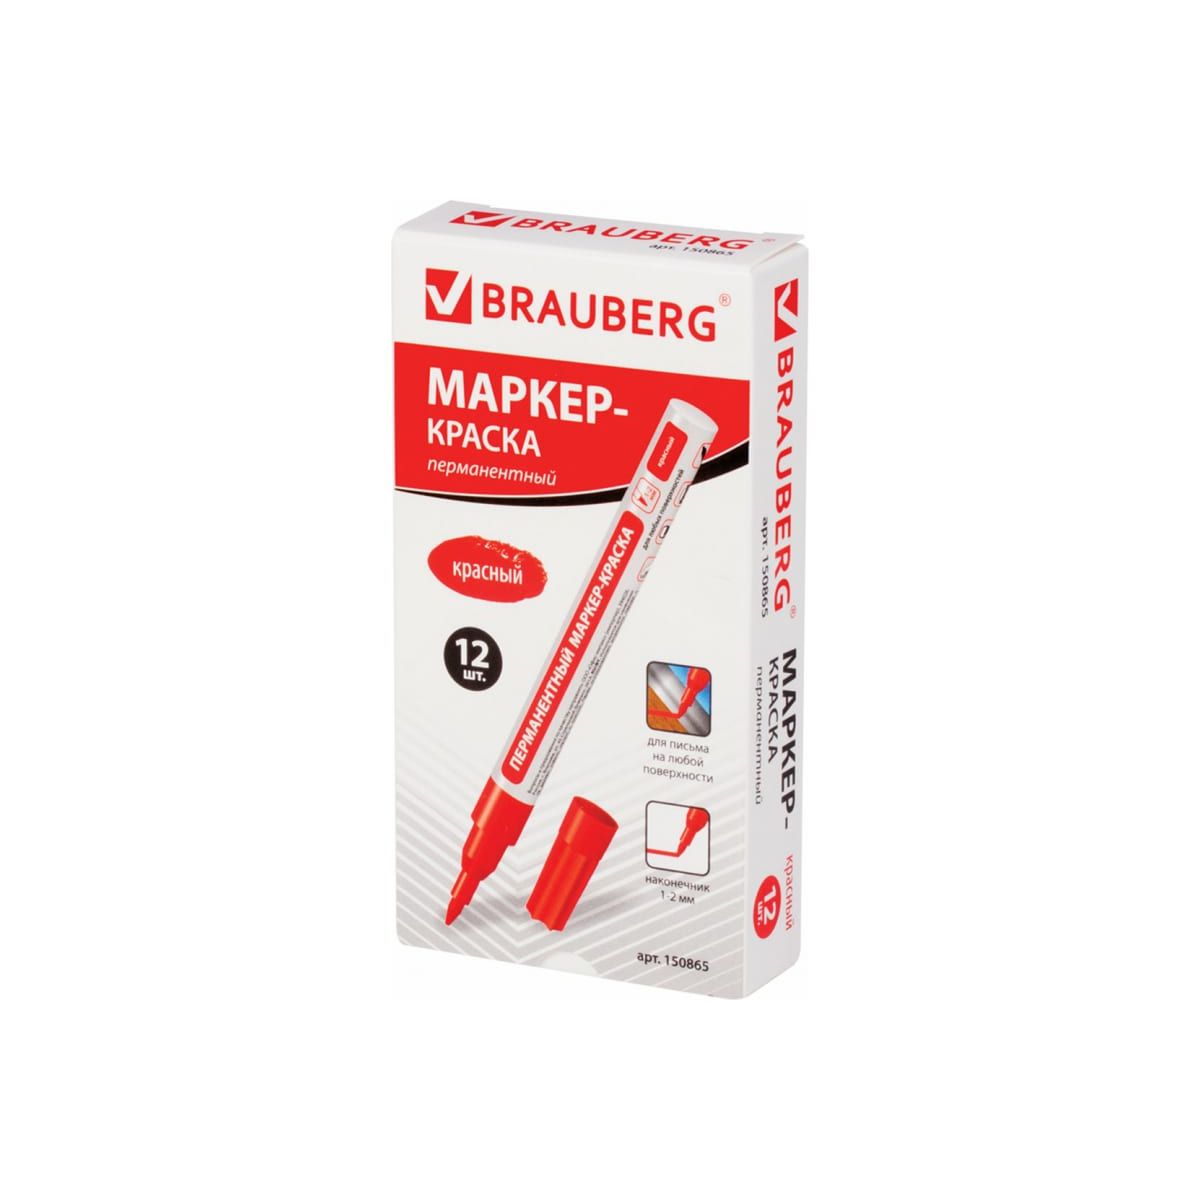 Маркер-краска Brauberg (paint marker) лаковый 2 мм (150865) красный 12 шт